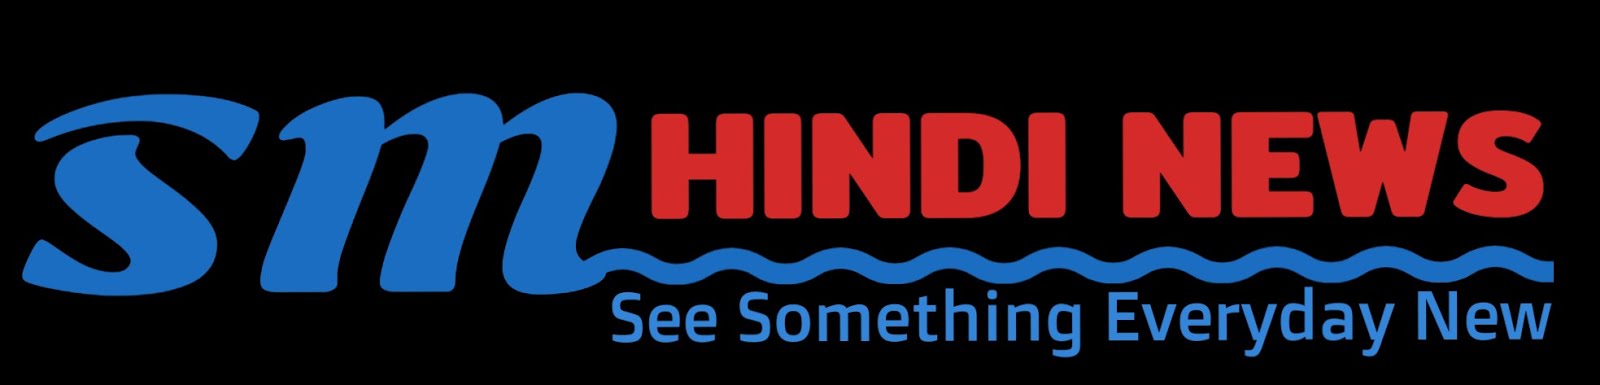 SM Hindi News